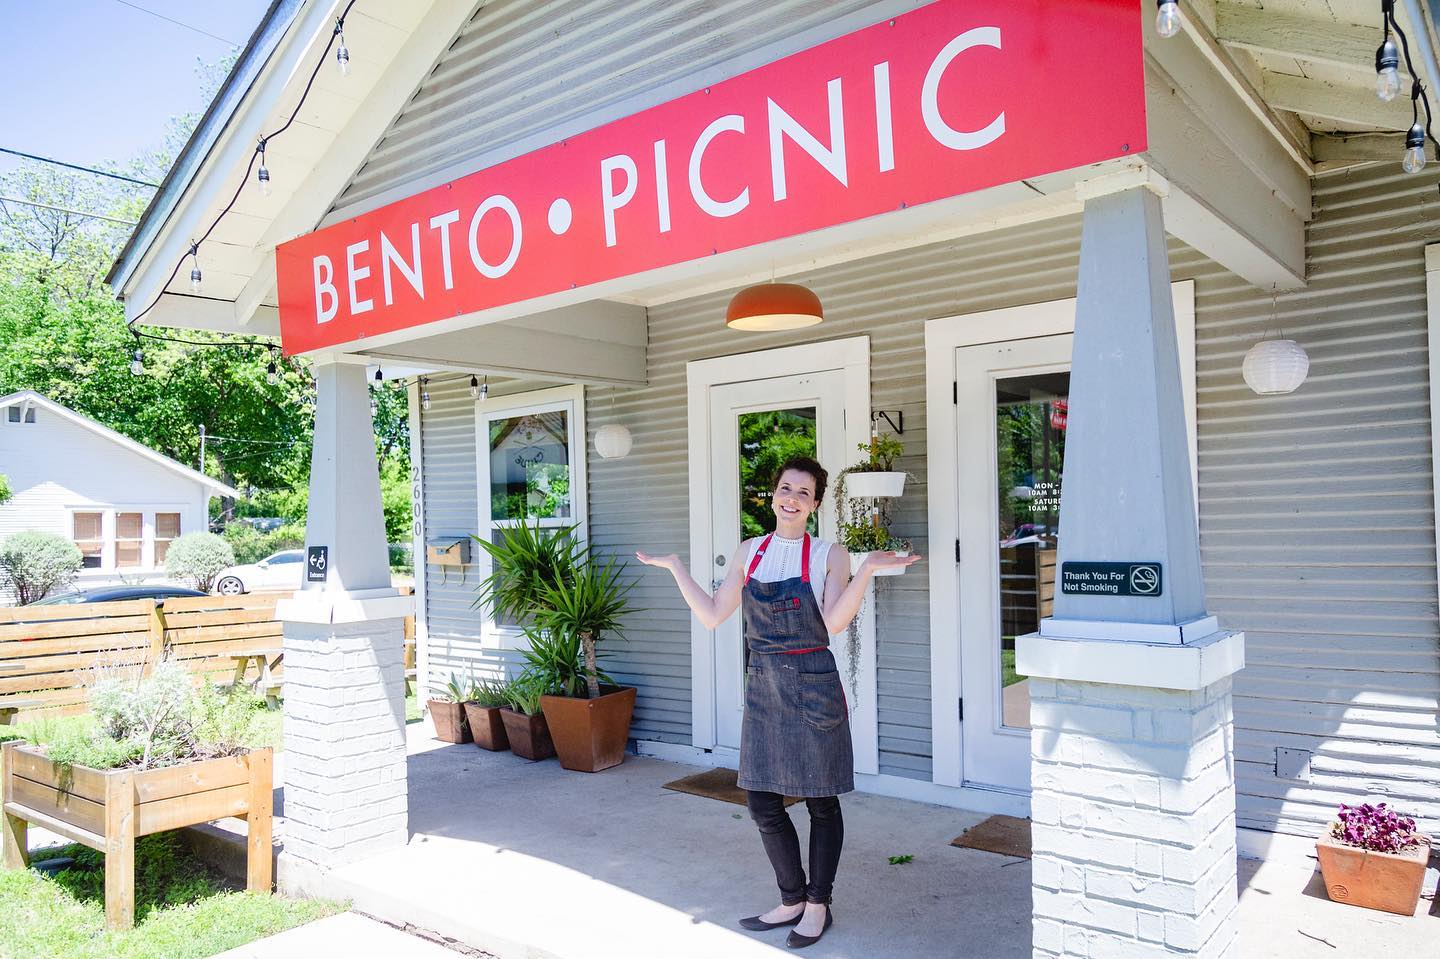 Leanne Valenti at Bento Picnic